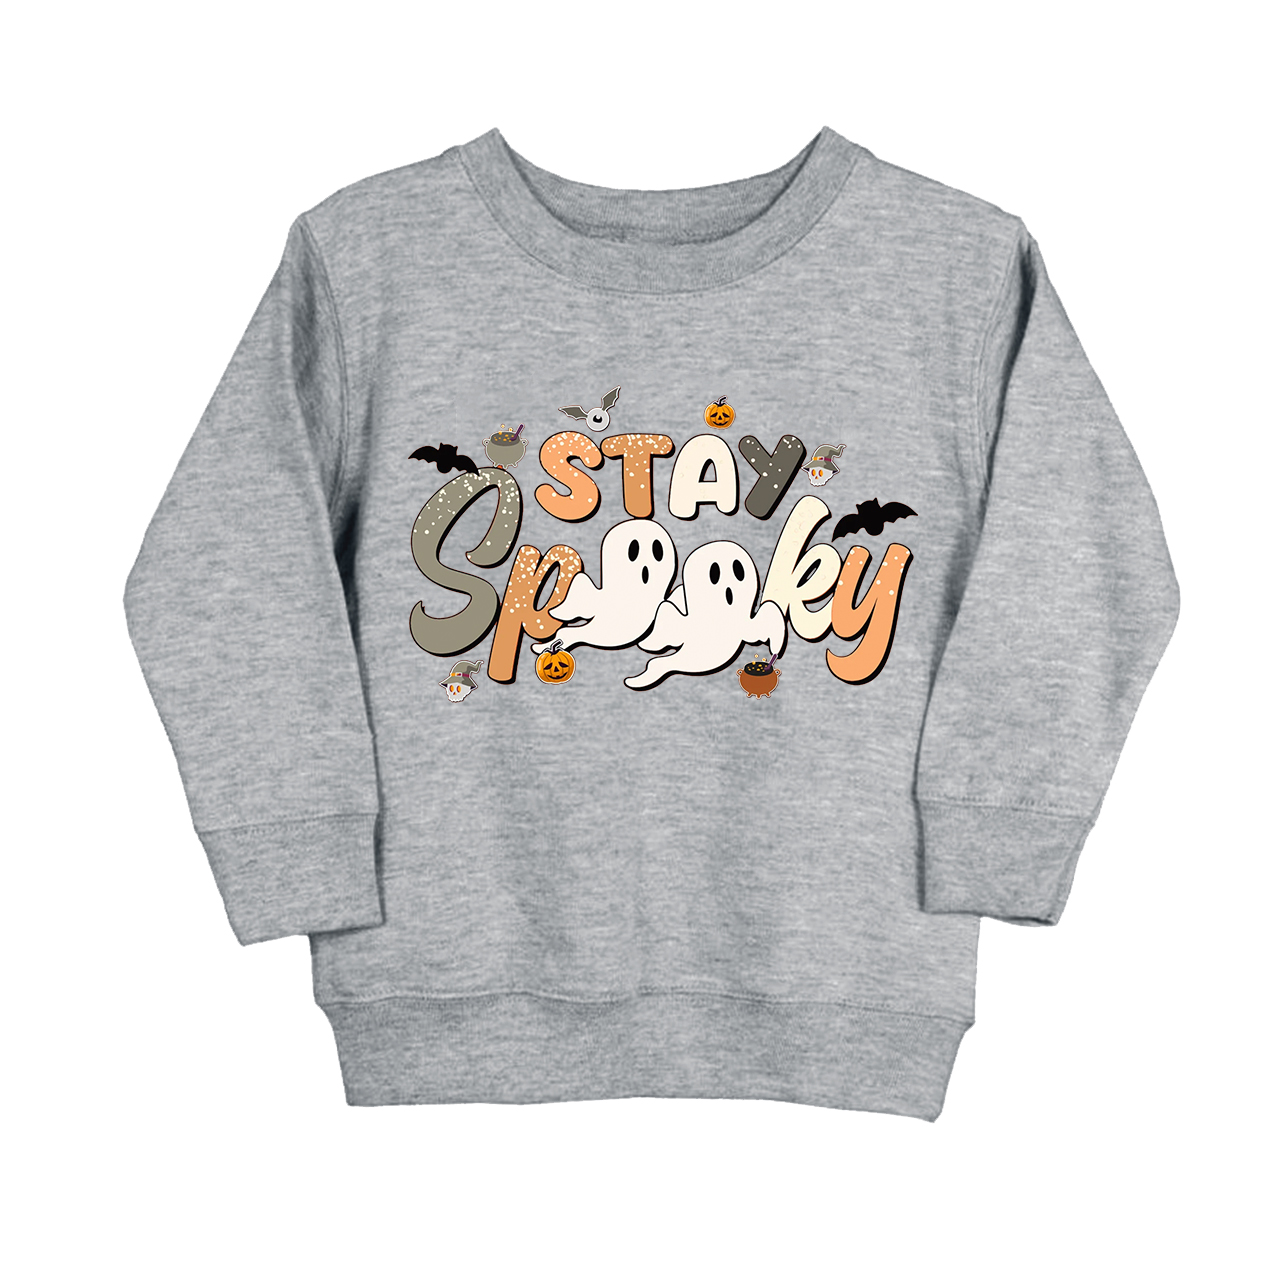 Stay Spooky Season Kids Sweatshirt